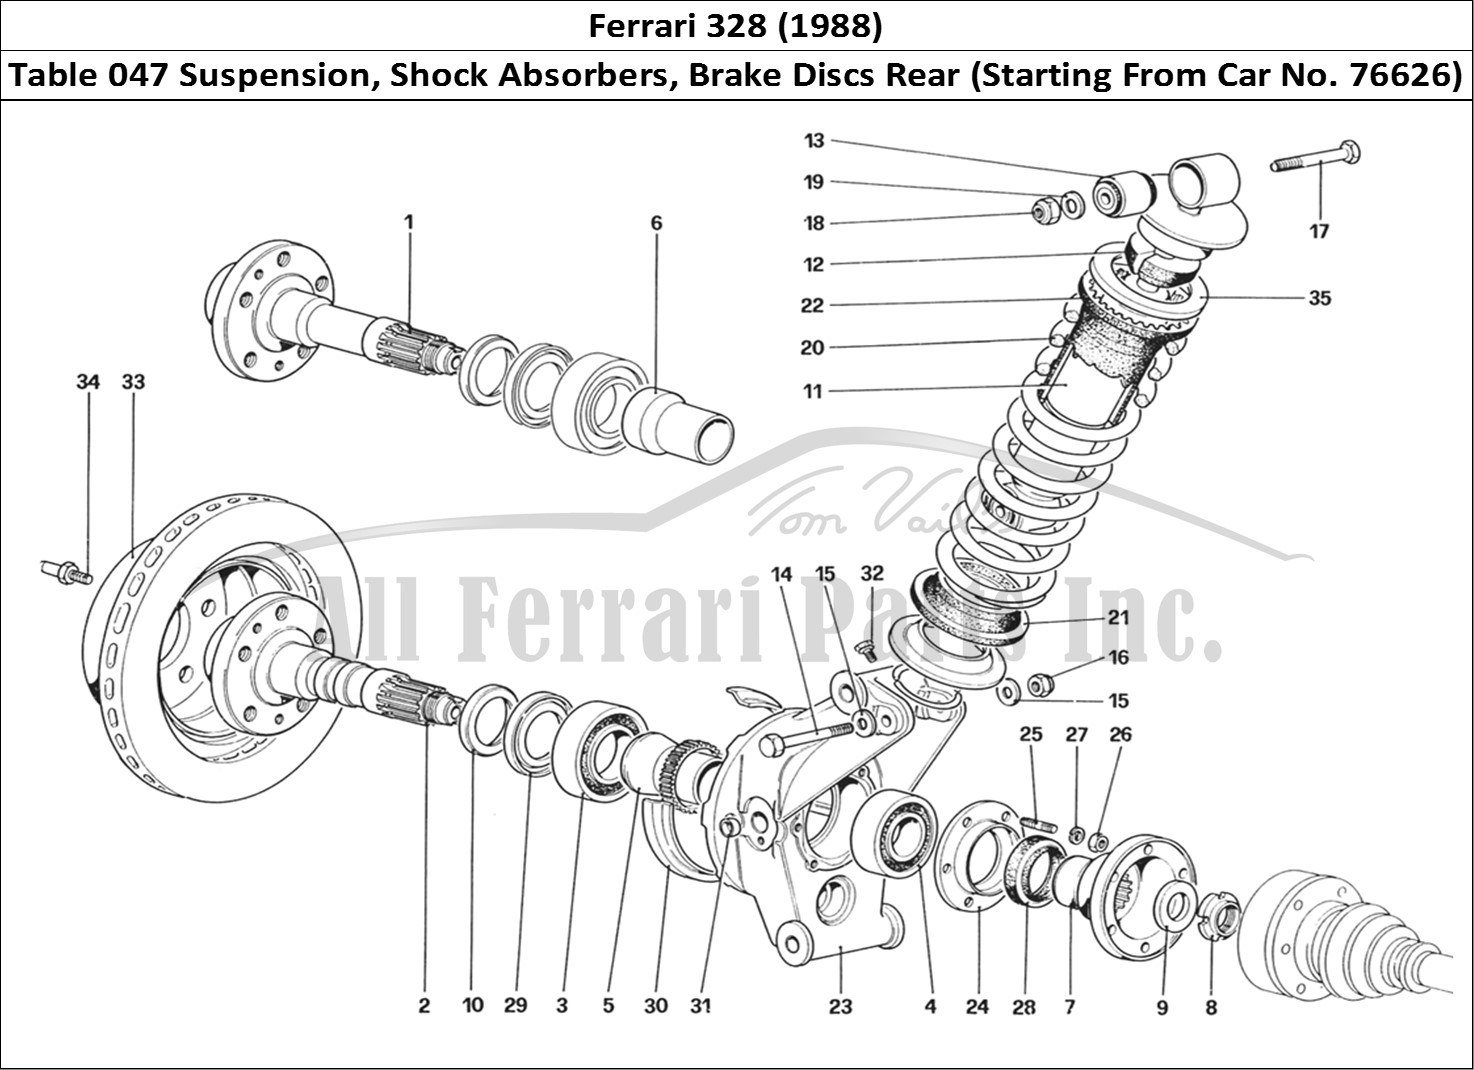 Ferrari Parts Ferrari 328 (1988) Page 047 Rear Suspension - Shock A